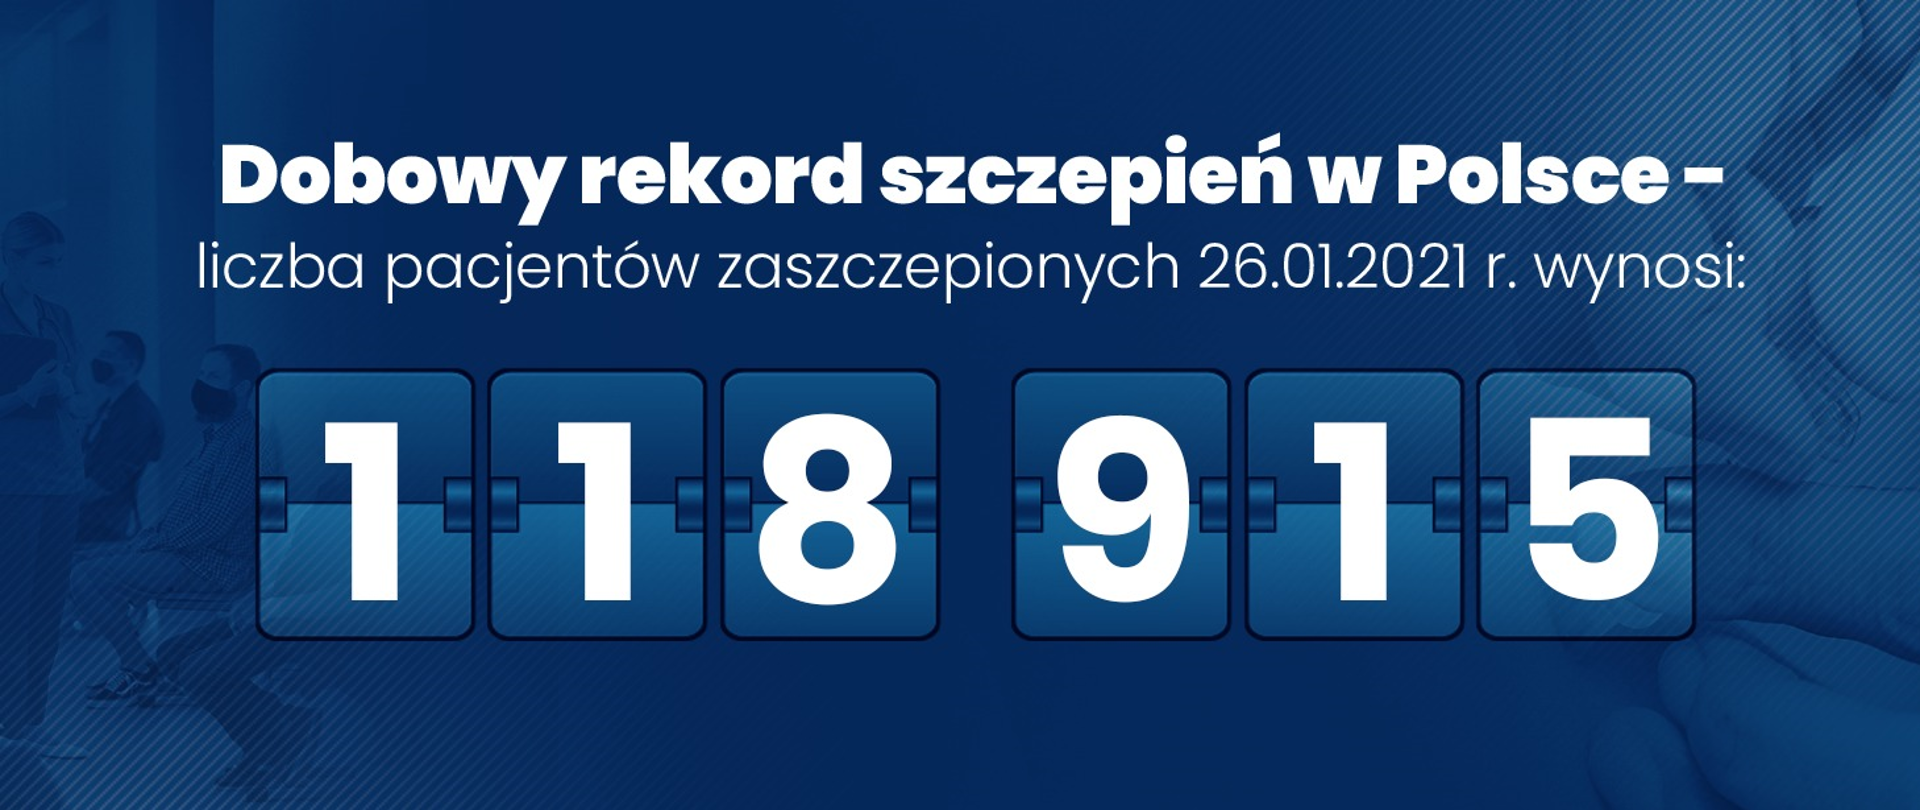 Dobowy rekord zakażeń w Polsce 118 915 - biały napis na niebieskim tle